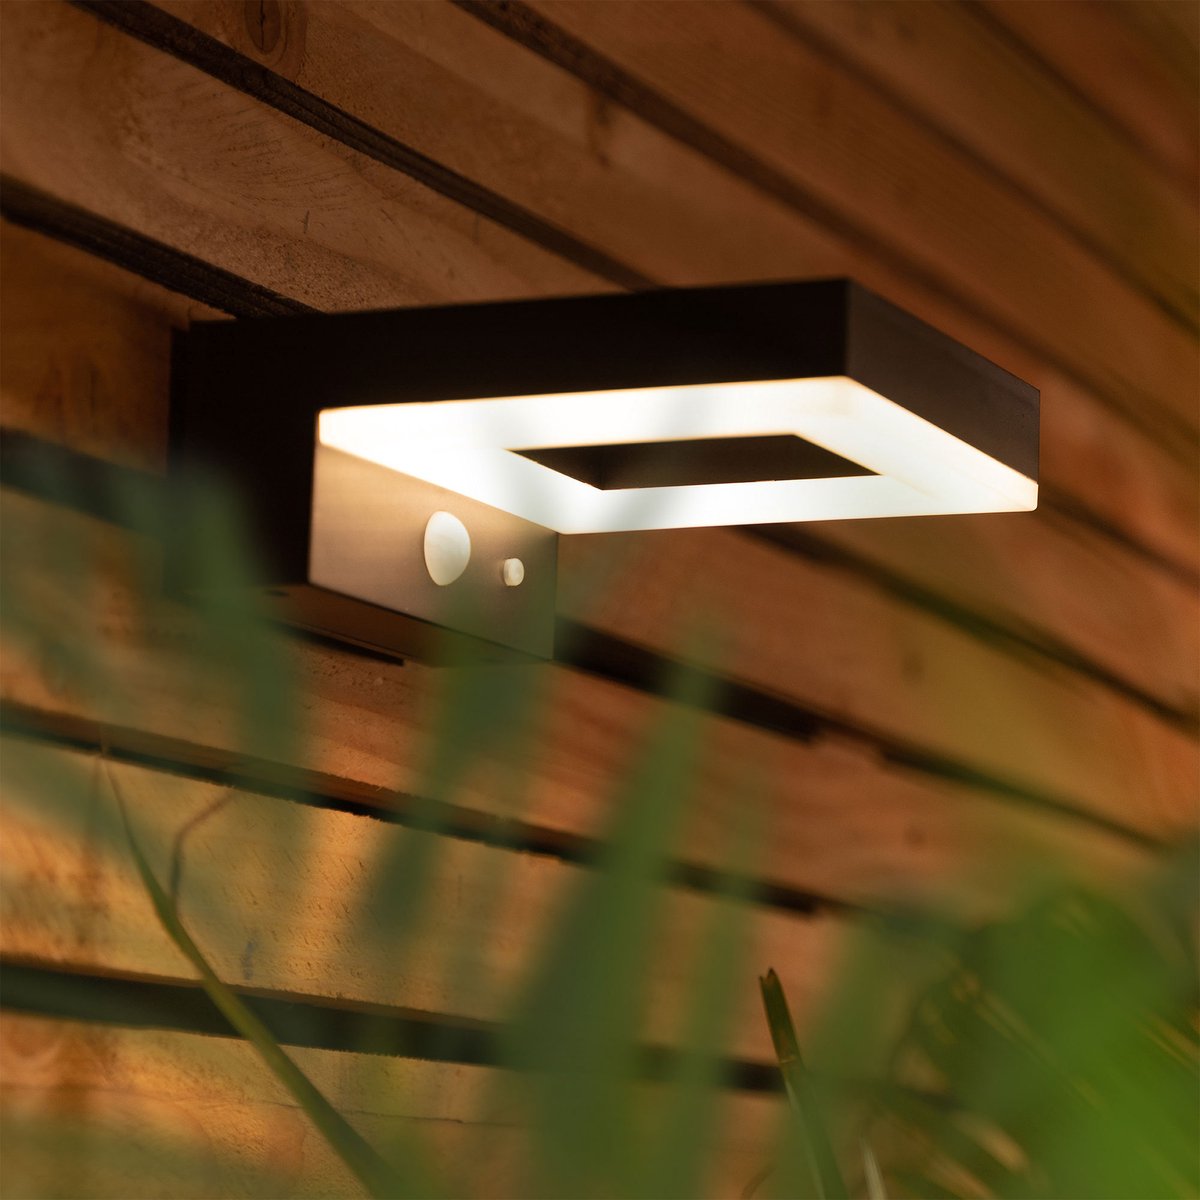 Bata Solar LED buitenlamp met bewegingssensor, Warm Wit Licht, 600 Lumen beveiligingslicht, IP44 waterbestendig, Solar buitenlamp bewegingssensor & 3 licht modi, Solar tuinverlichting, Tuinverlichting op zonneenergie, Brendz